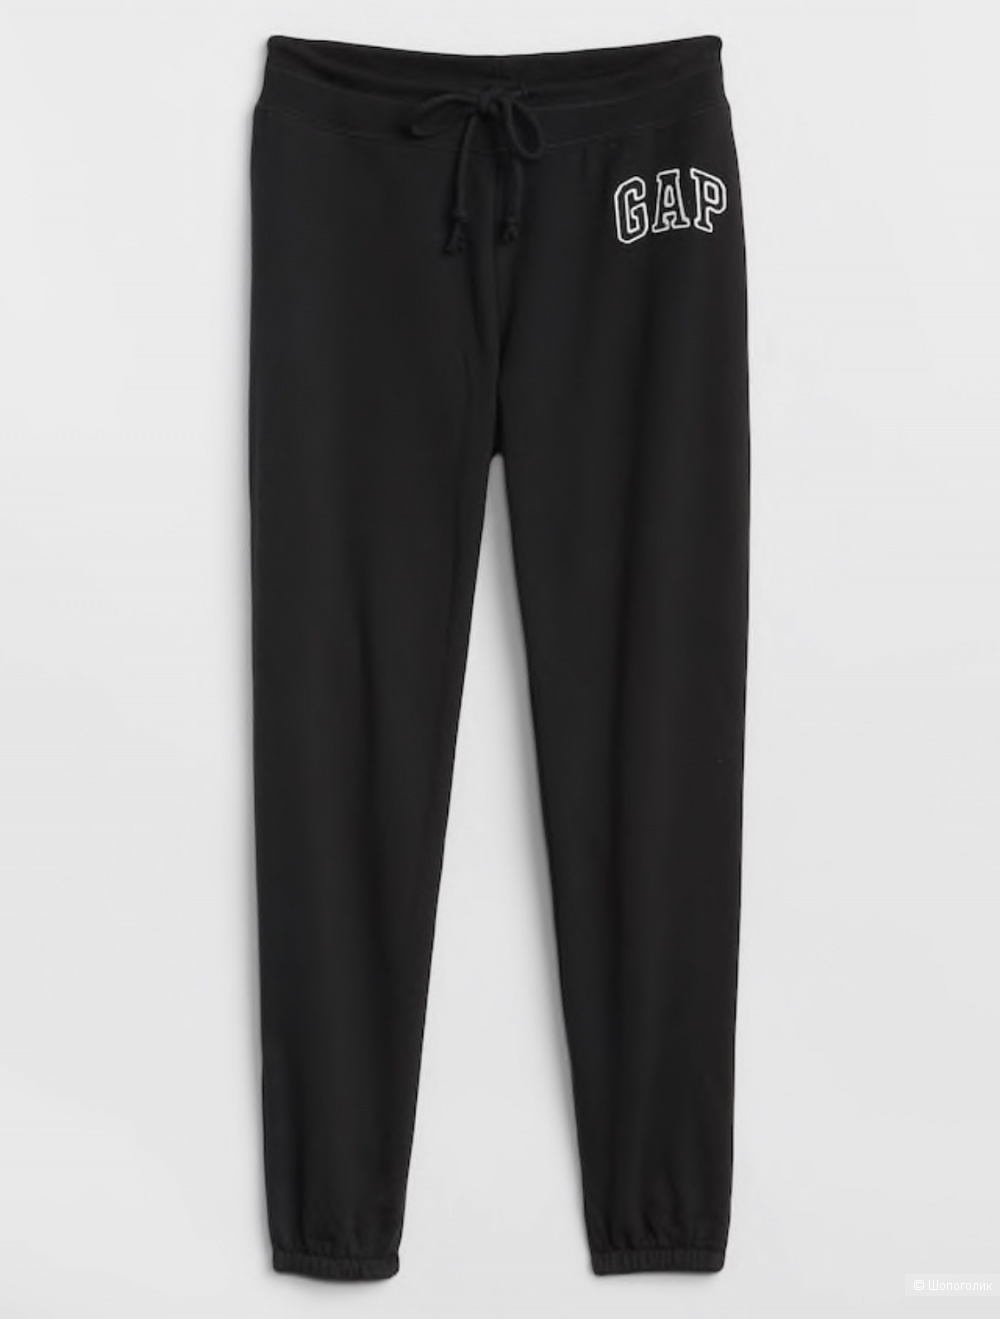 Sweat pants от Gap размер S